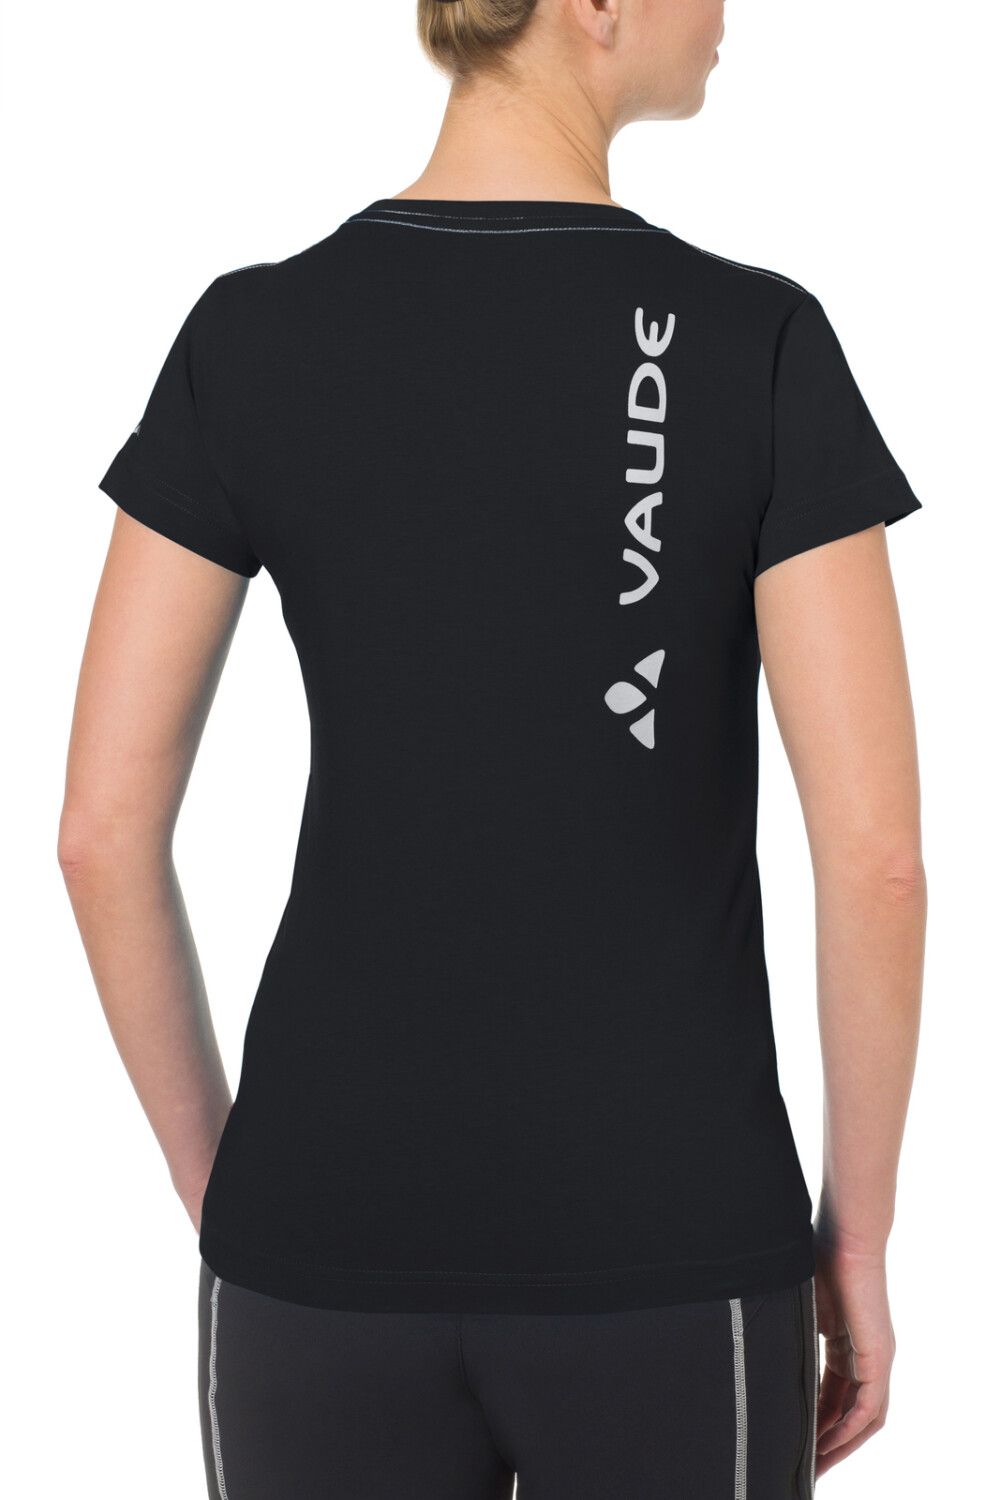 VAUDE Women's Brand Shirt (Bild 5)